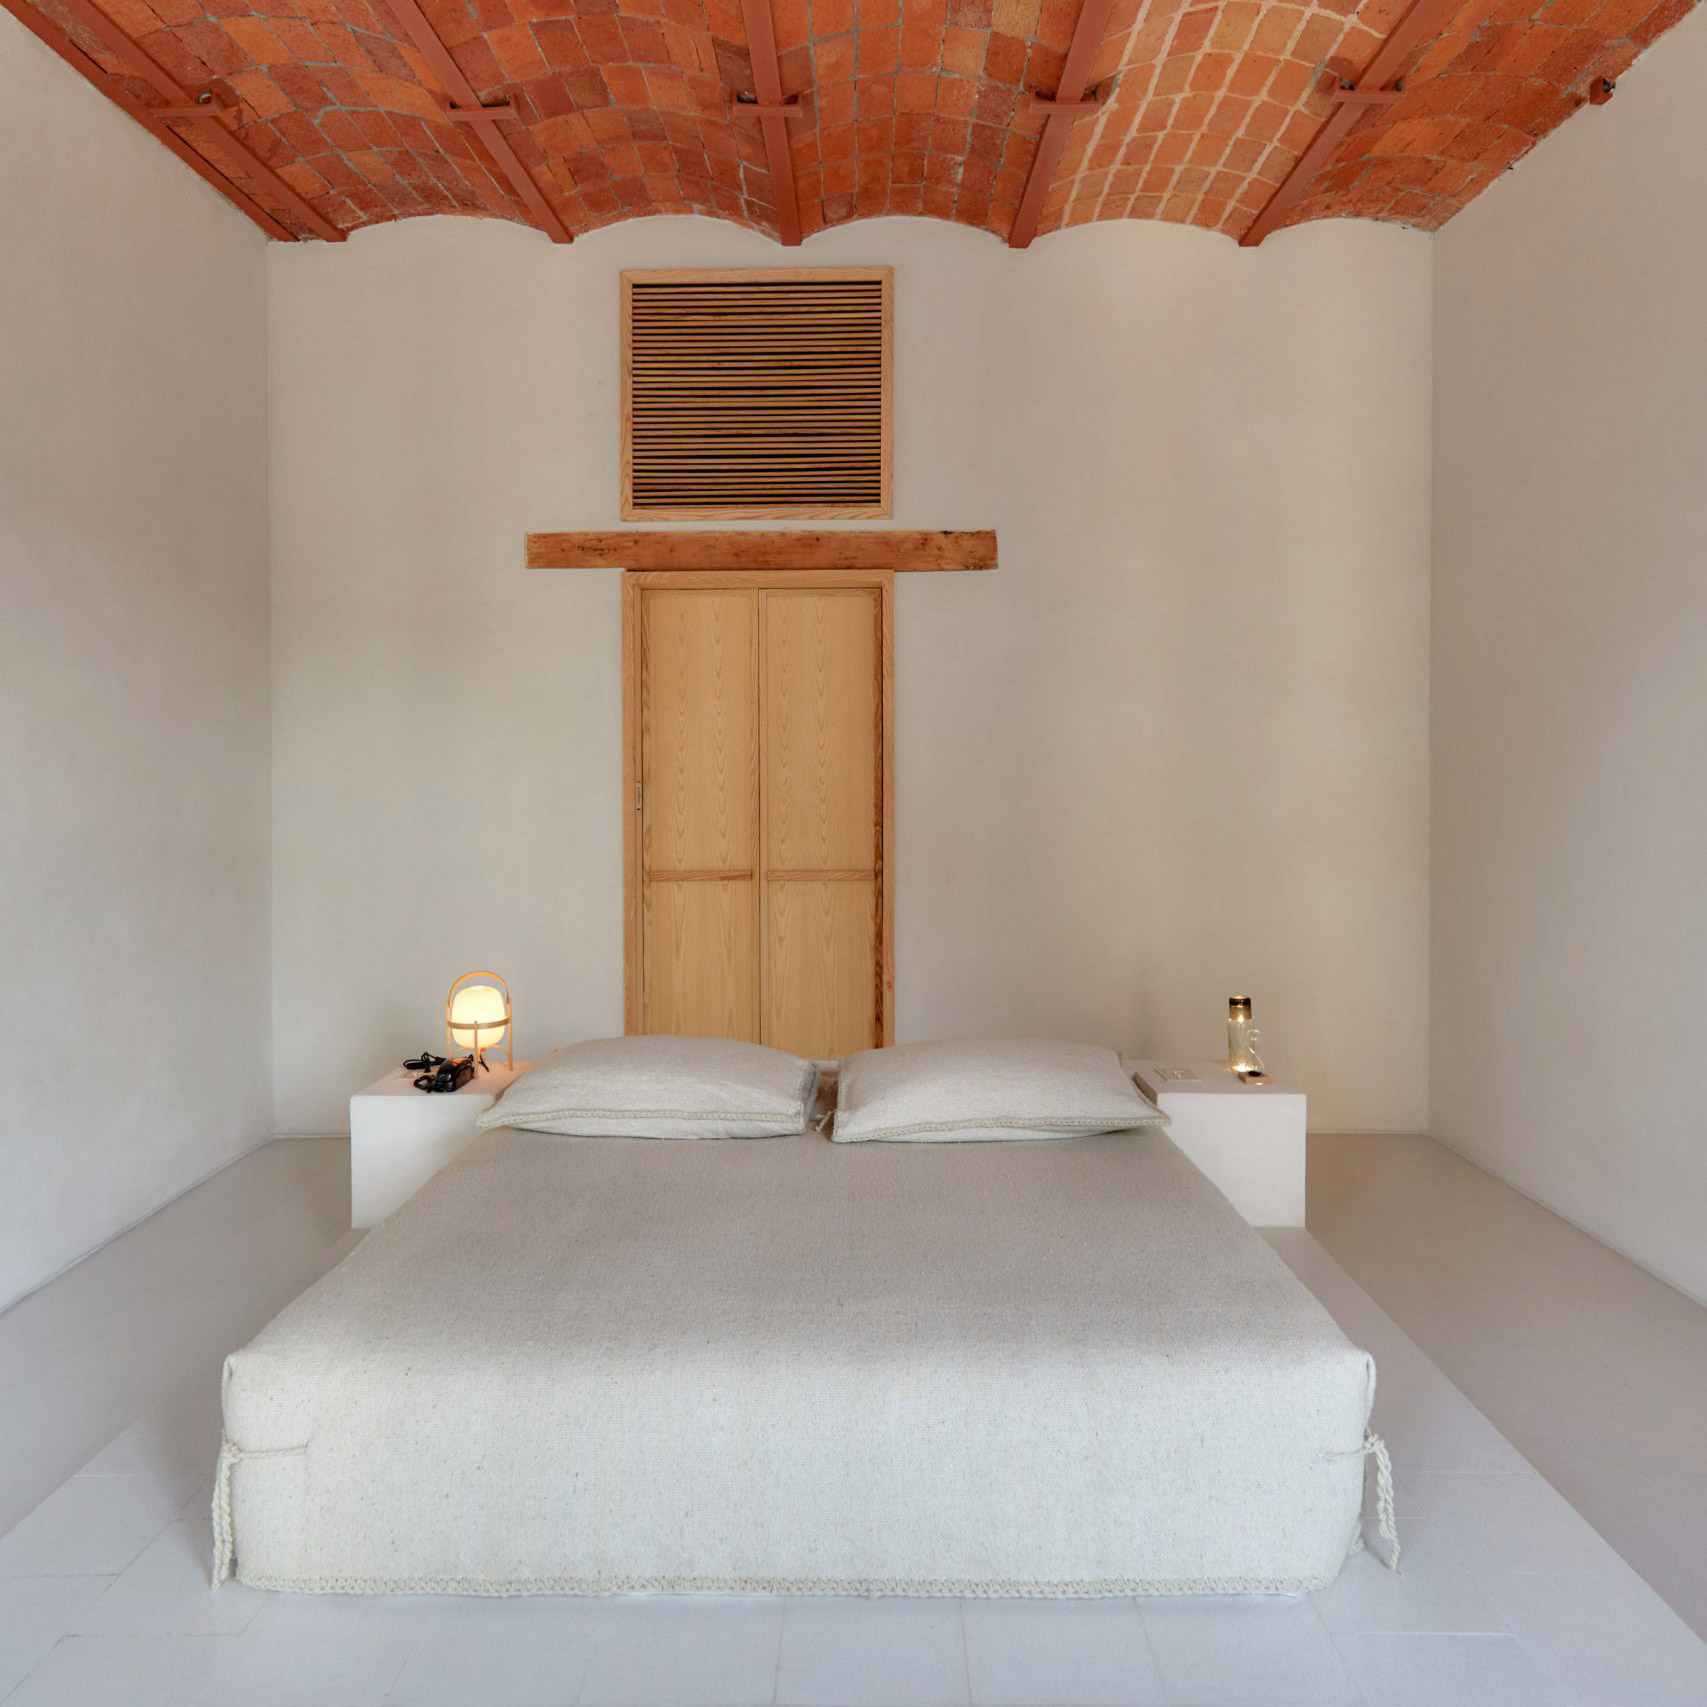 Bedroom in Círculo Mexicano Hotel, Mexico, by Mabrosi Etchegaray